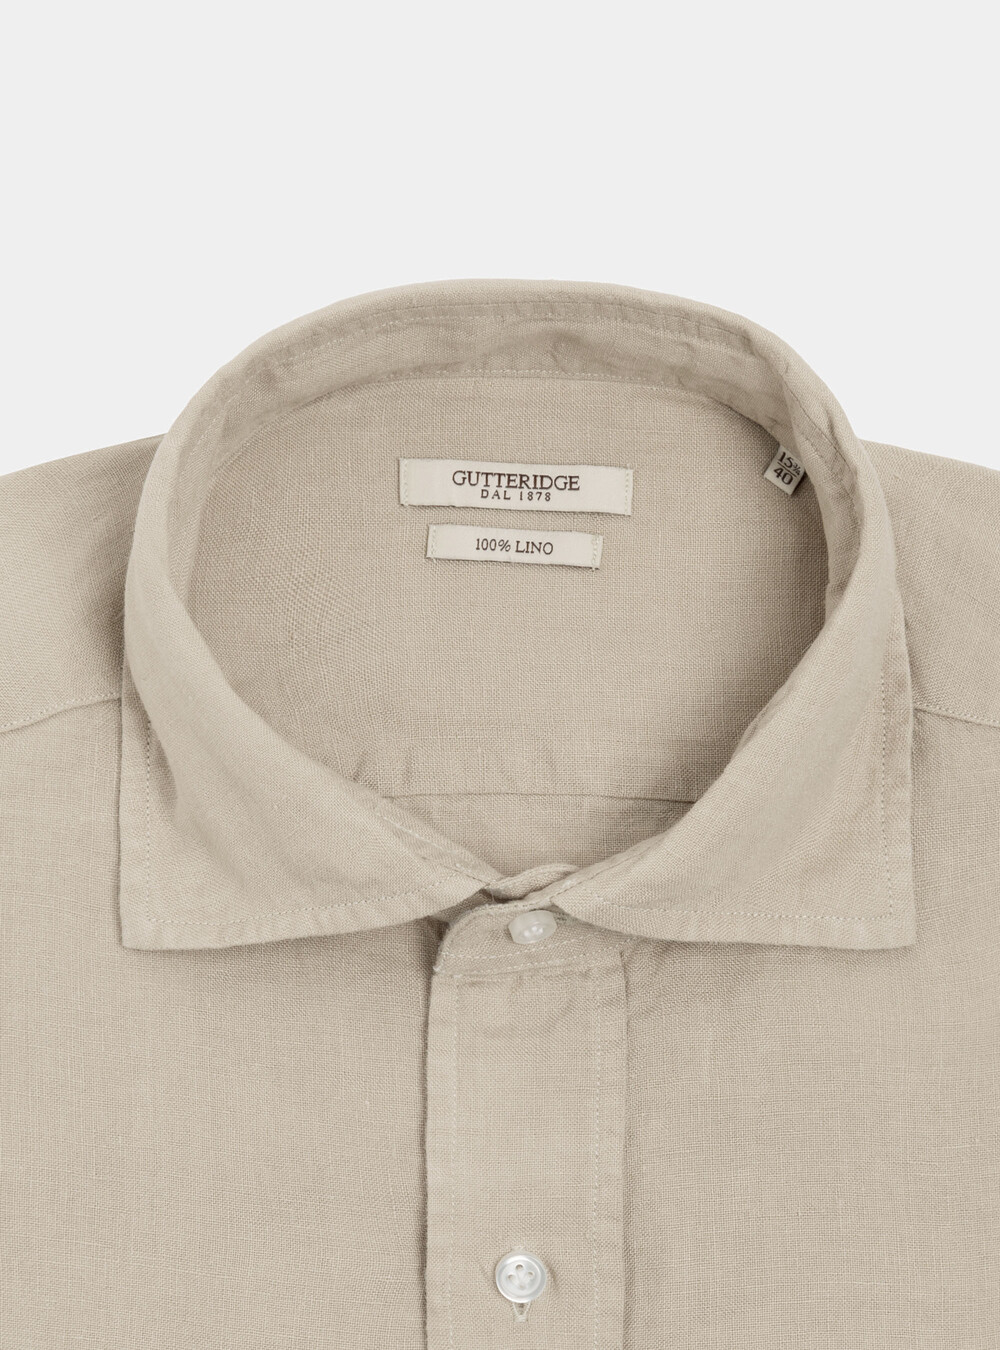 Camicia in puro lino | Gutteridge | Camicie Uomo